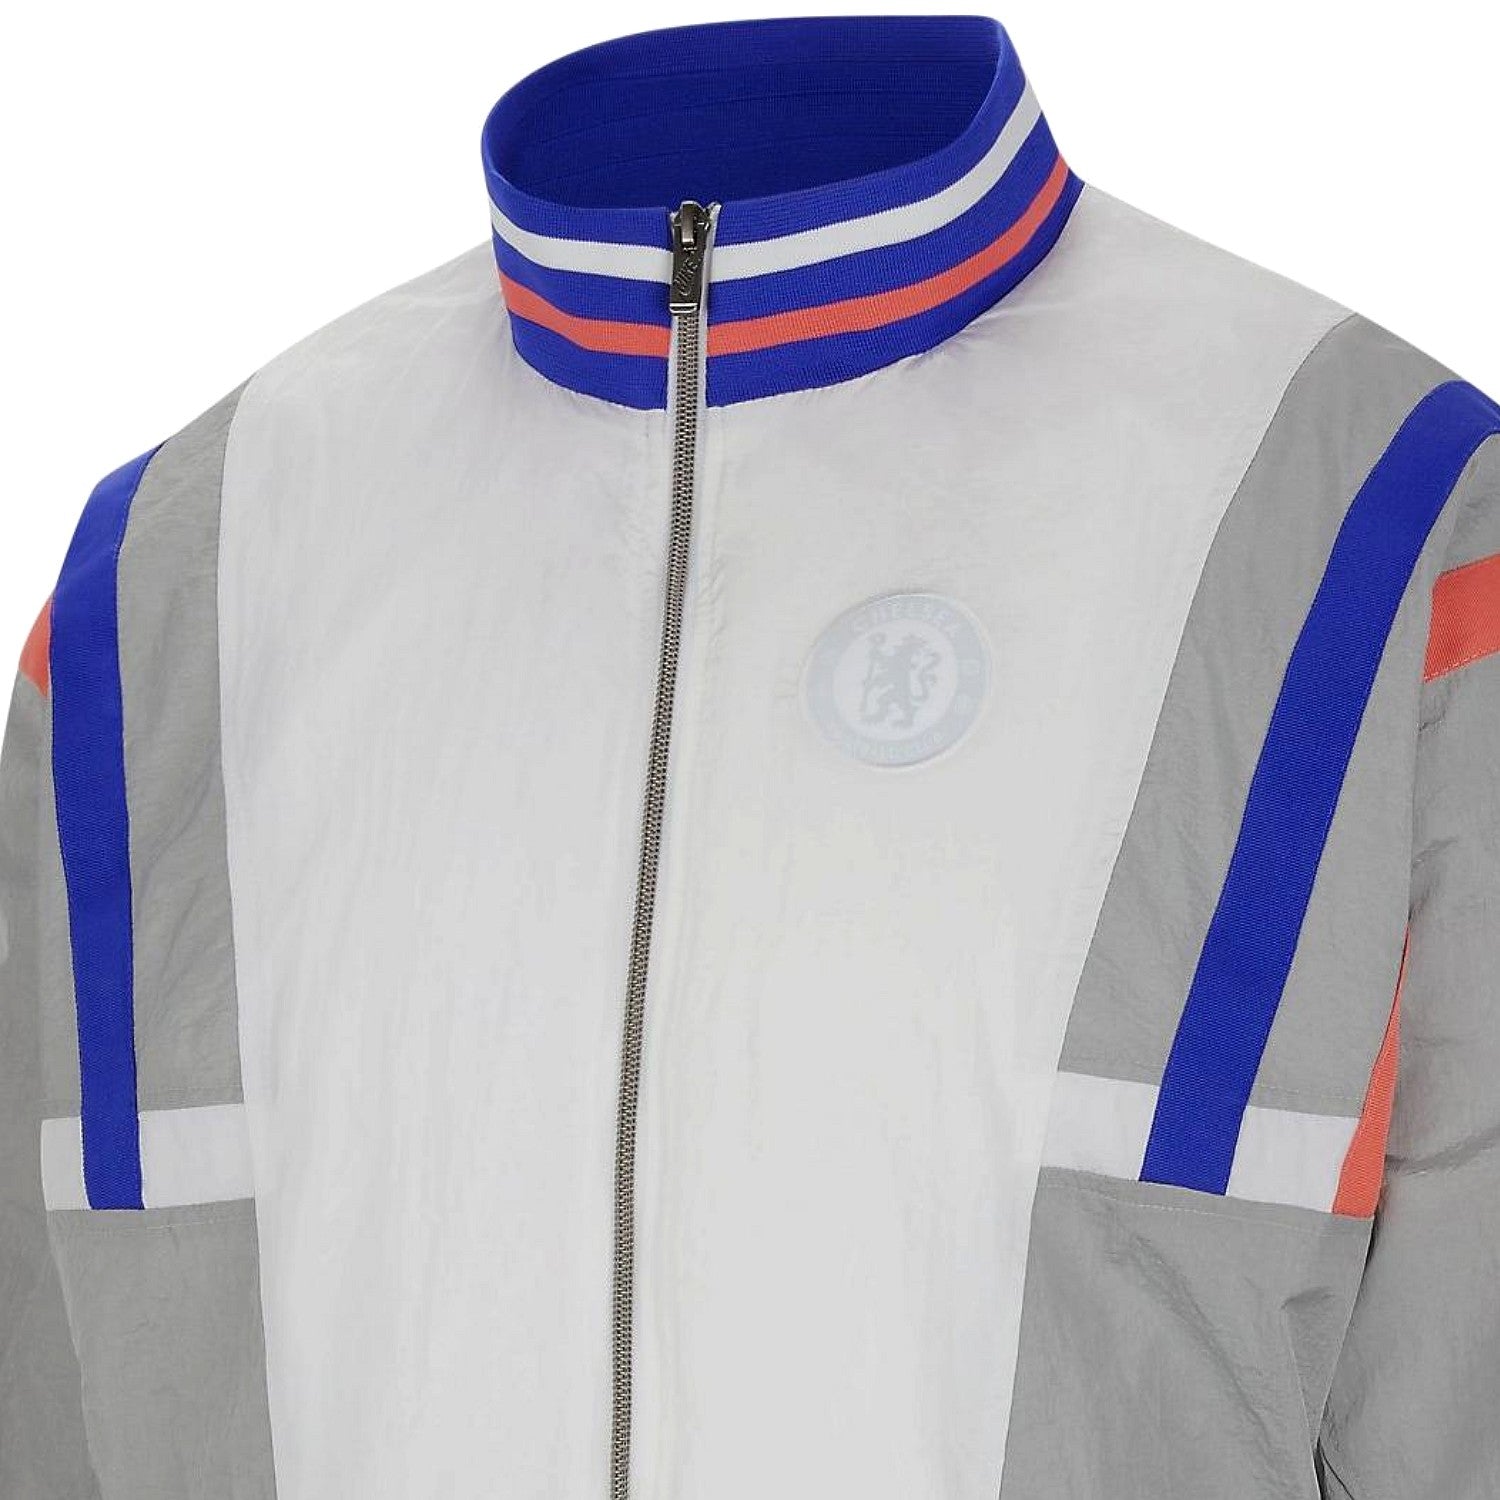 parrilla Arreglo tirar a la basura Chelsea FC Air Max presentation woven college jacket 2021 - Nike –  SoccerTracksuits.com